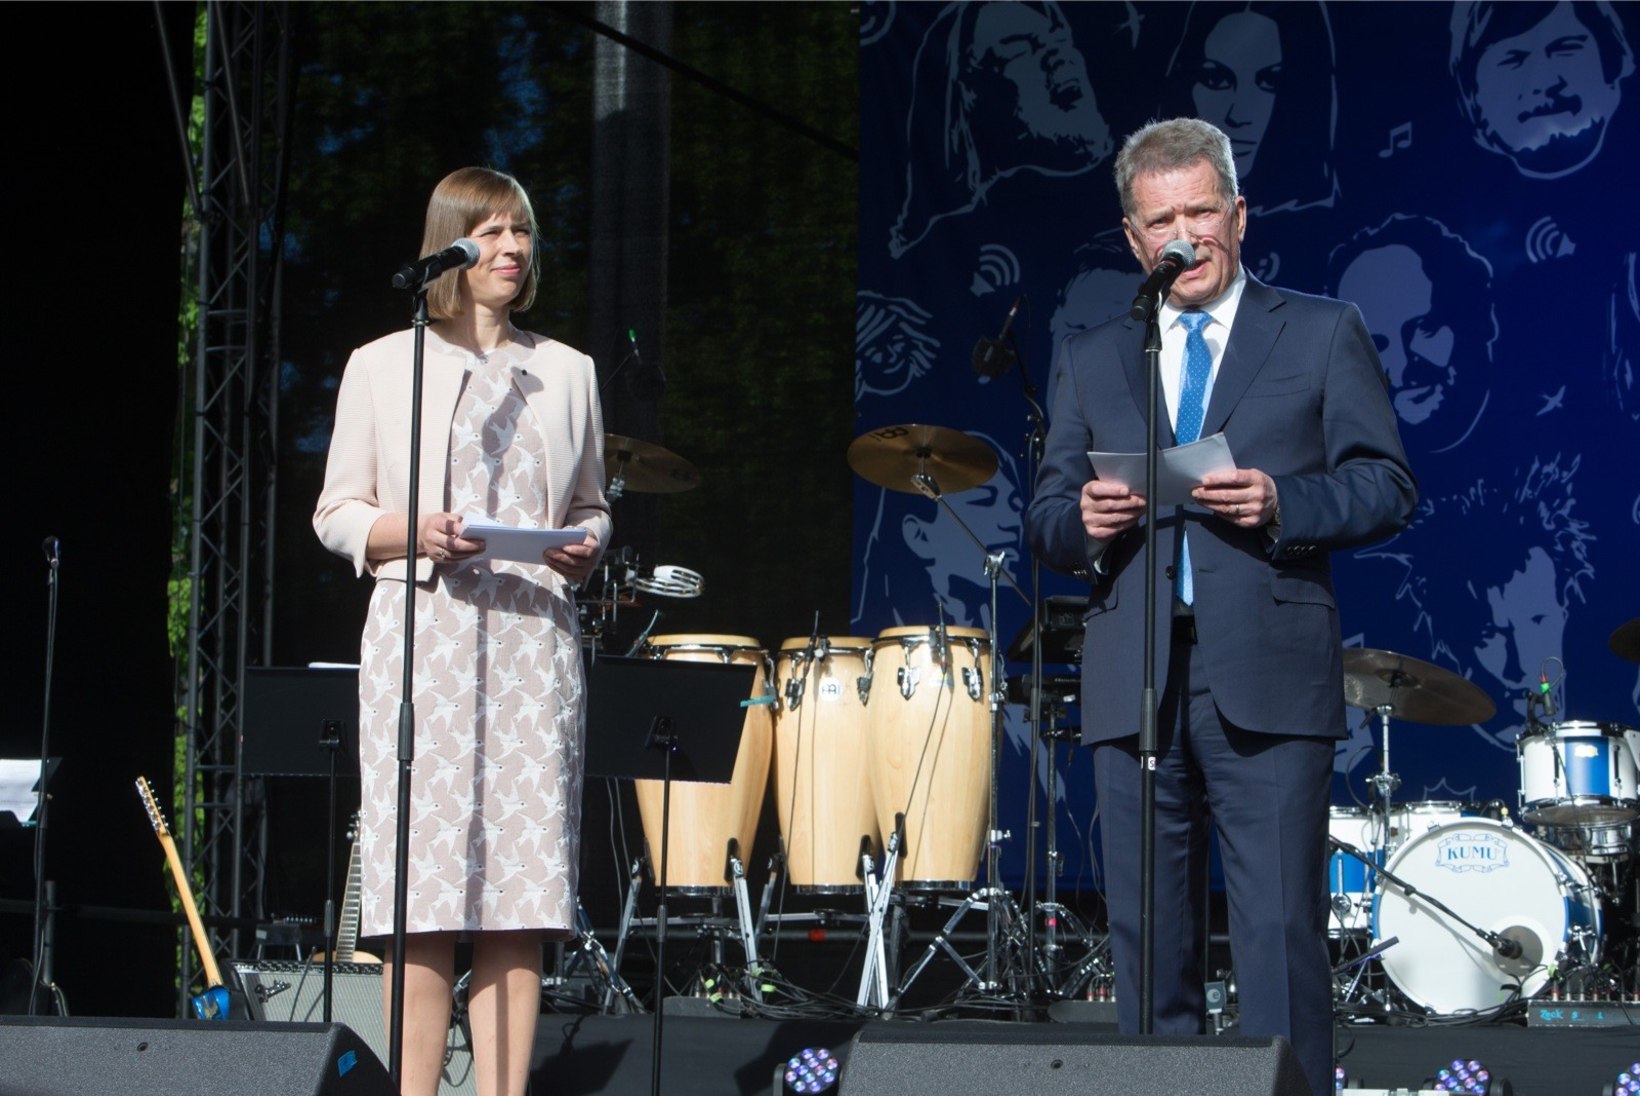 Soome presidendikandidaatidest tuleks sõjas Eestile appi vaid rohelised